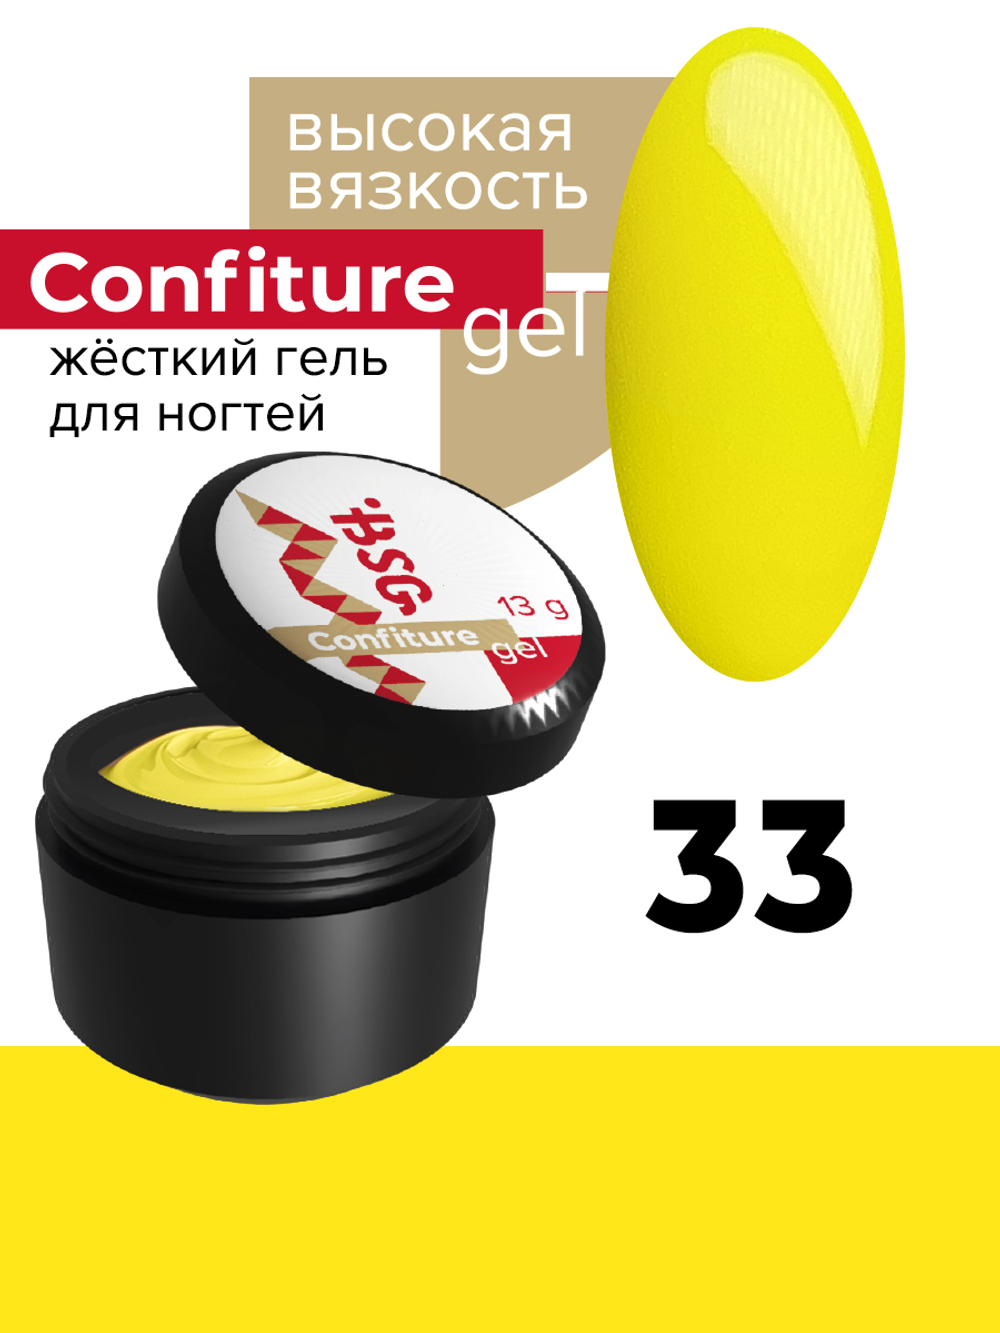 Жёсткий гель  для наращивания  Confiture №33 ВЫСОКАЯ ВЯЗКОСТЬ - Ярко-жёлтый (13 г)